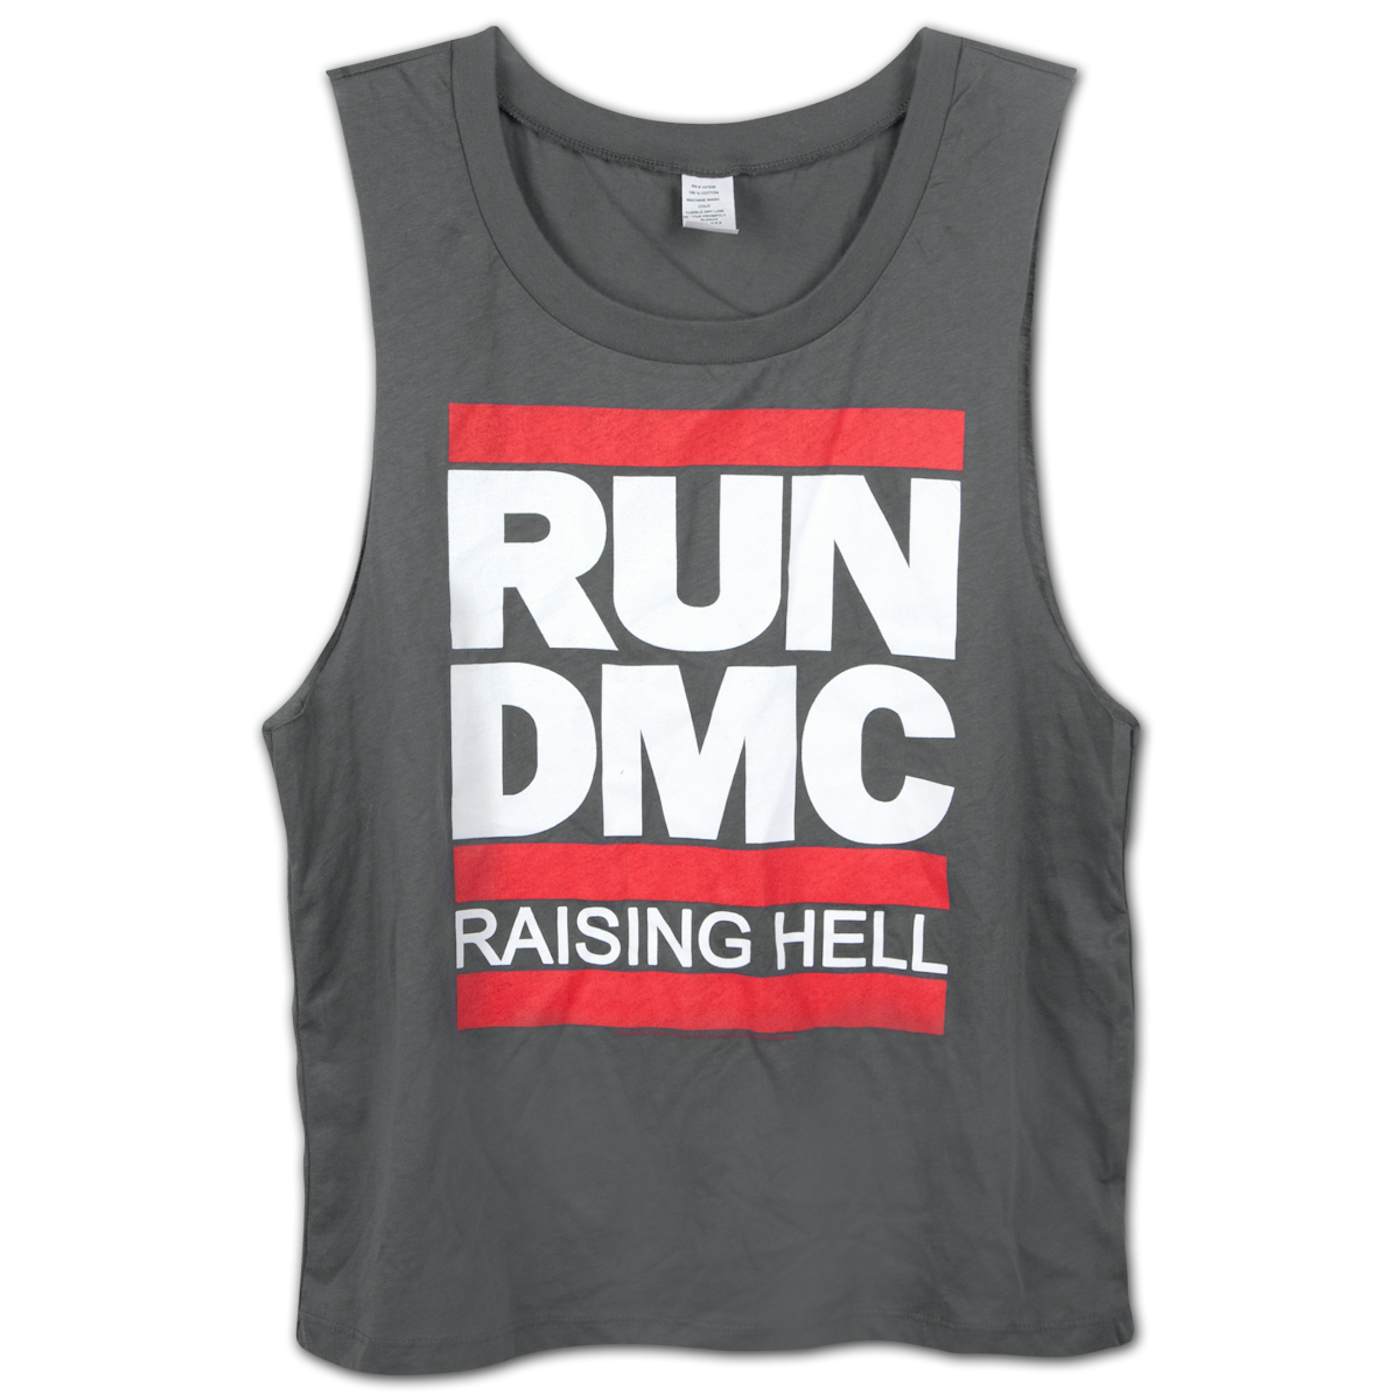 Run DMC "Raising Hell" Tank Top